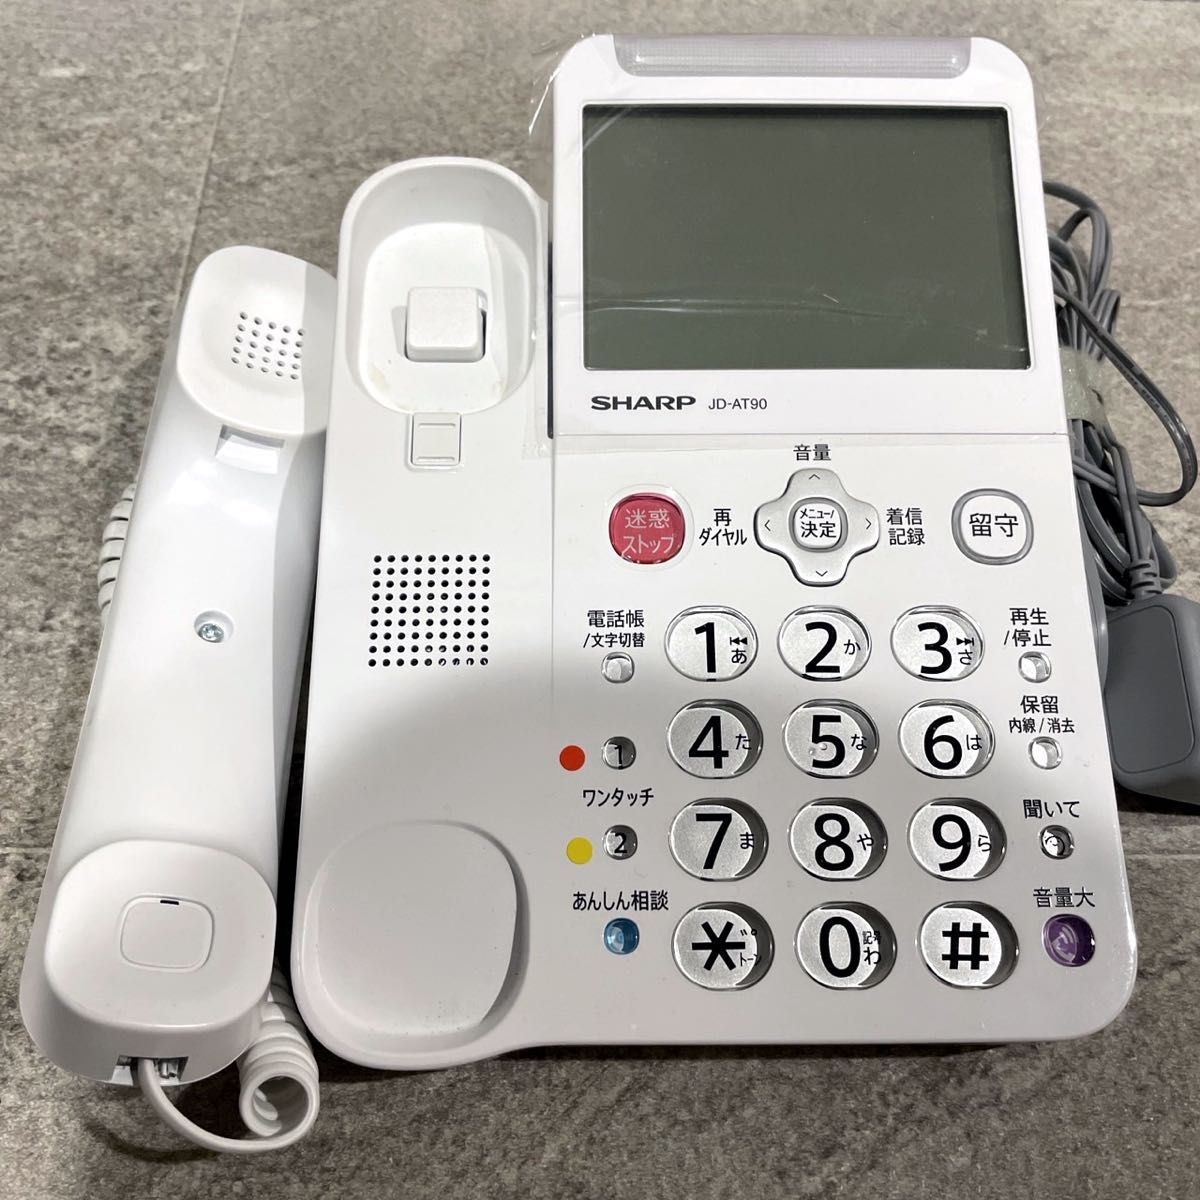 美品 シャープ デジタルコードレス電話機 JD-AT90CW 子機2台付